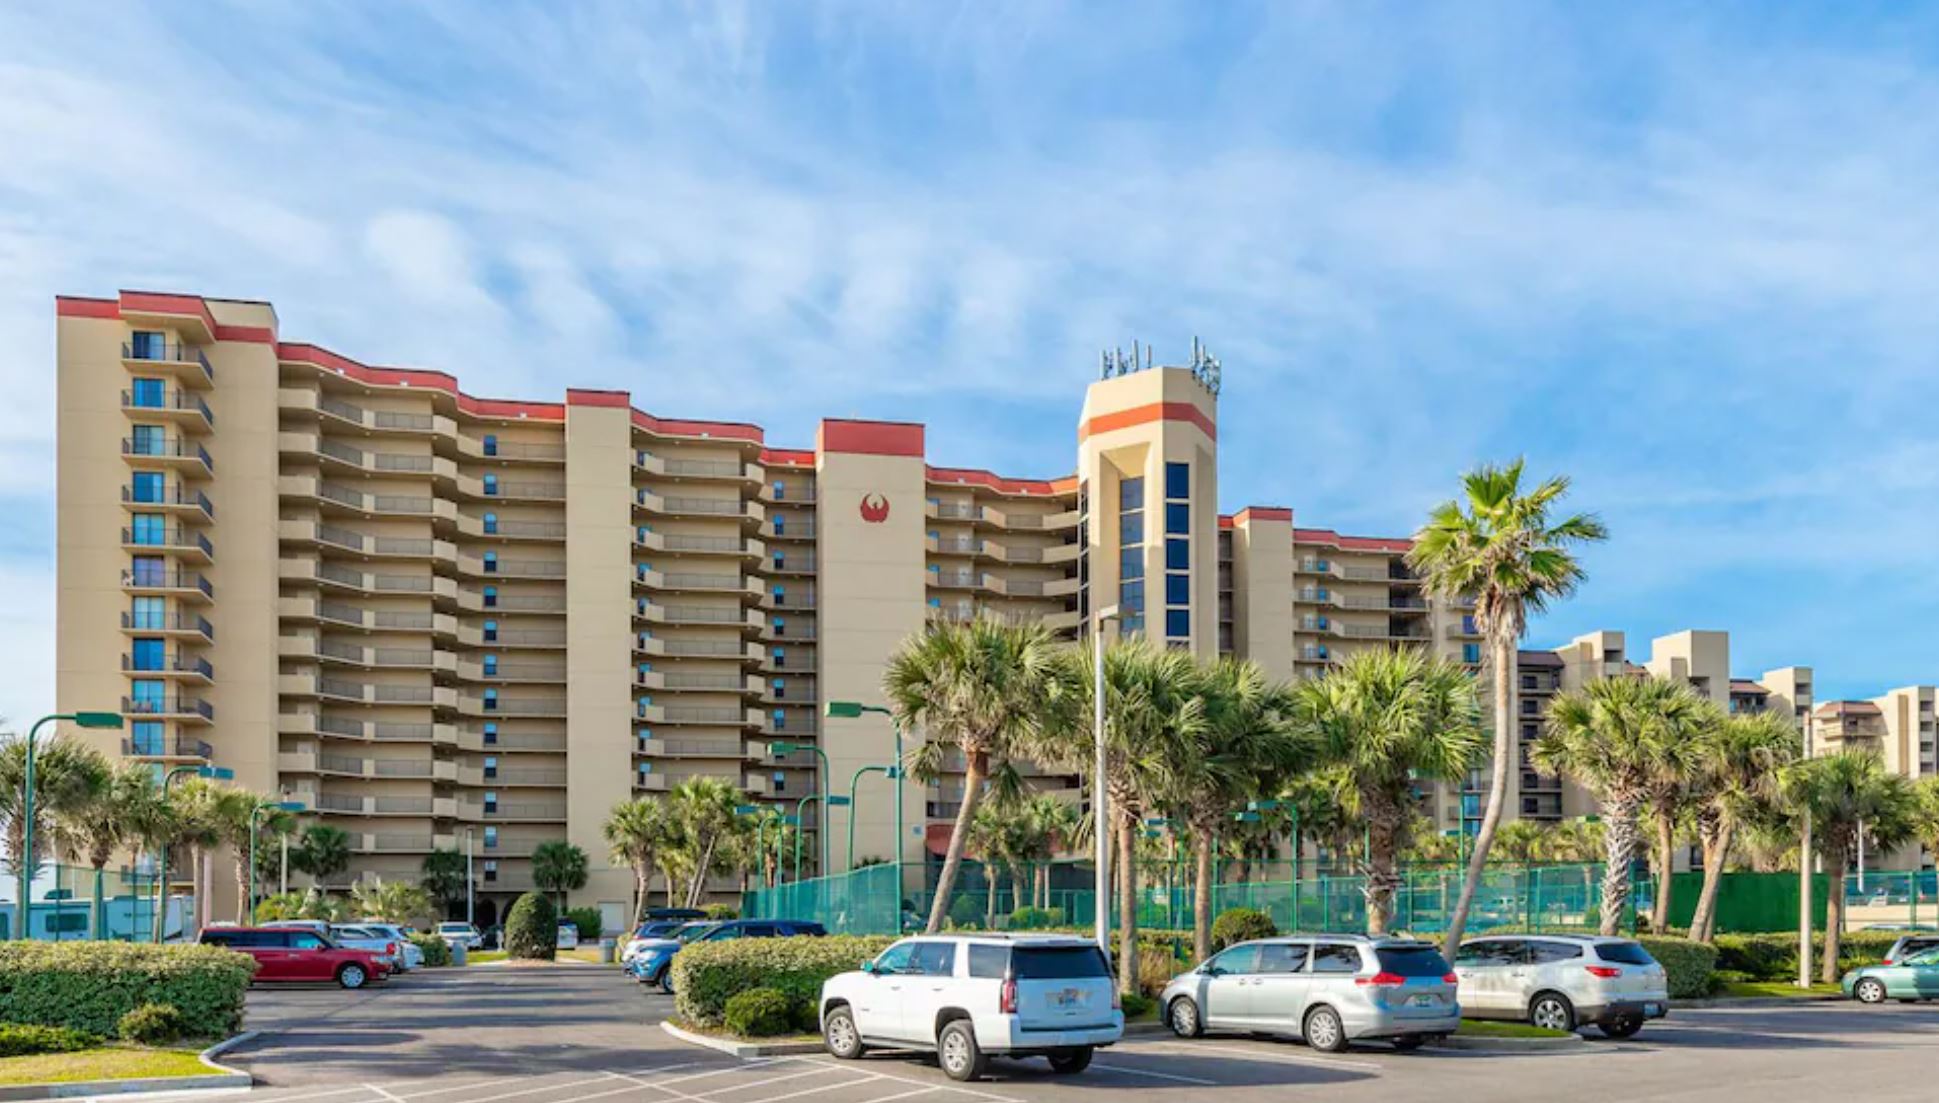 Resorts and Condos in Orange Beach Alabama, Phoenix V Condo building